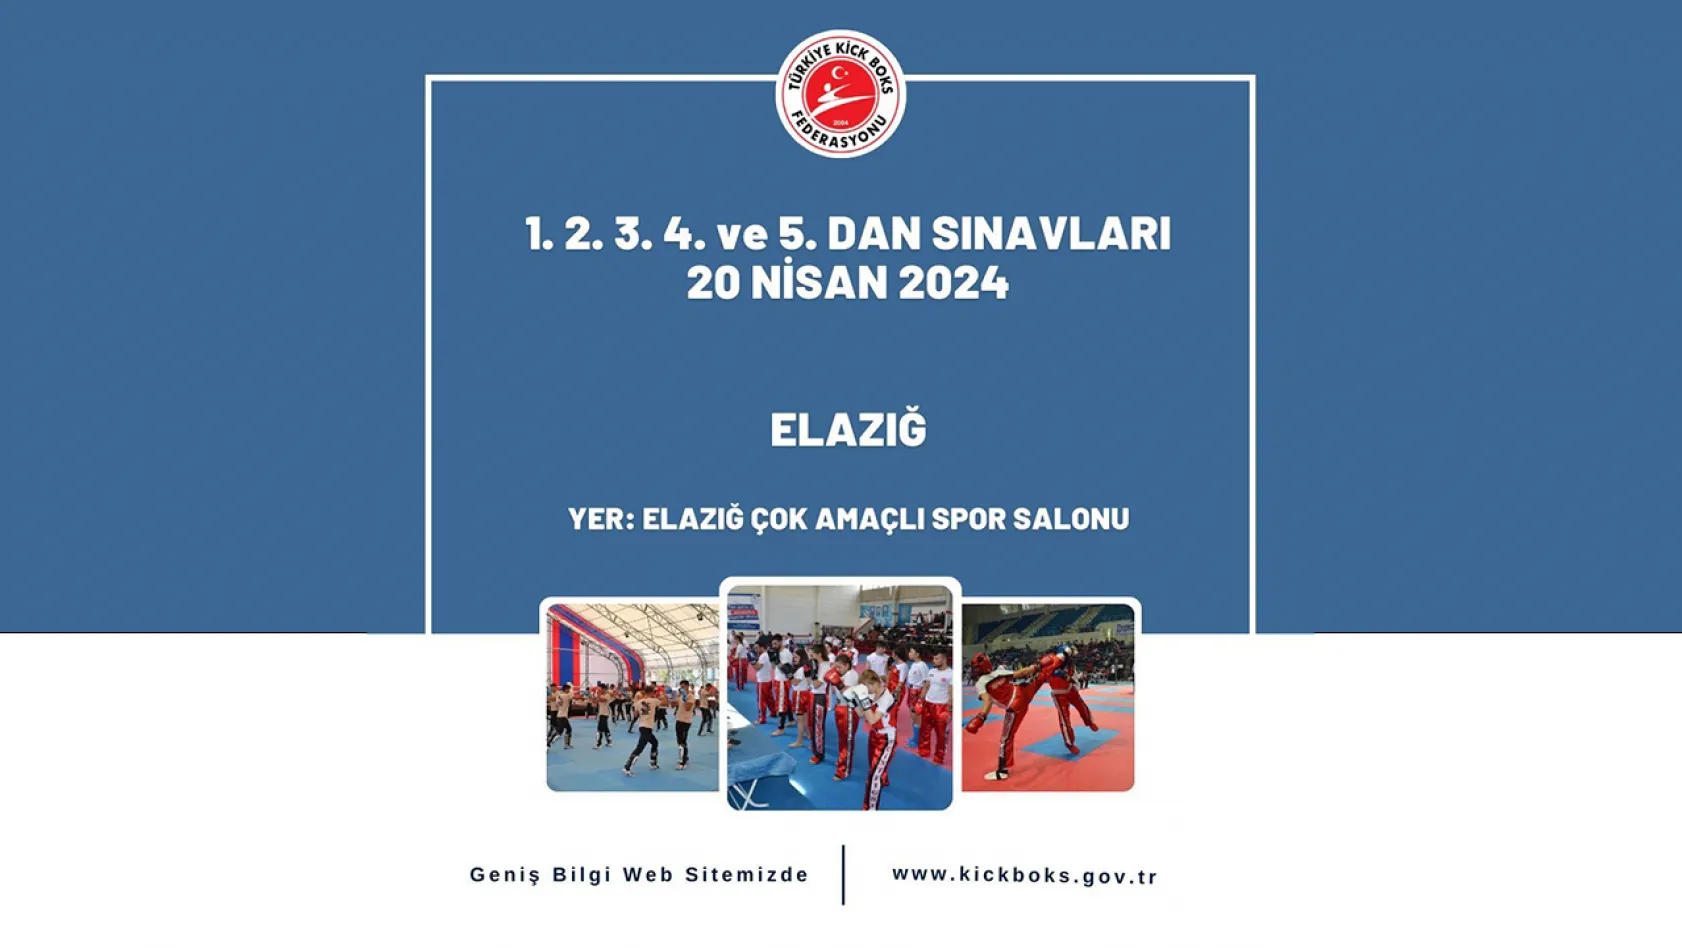 Kick boks dan kuşak sınavı Elazığ'da yapılacak